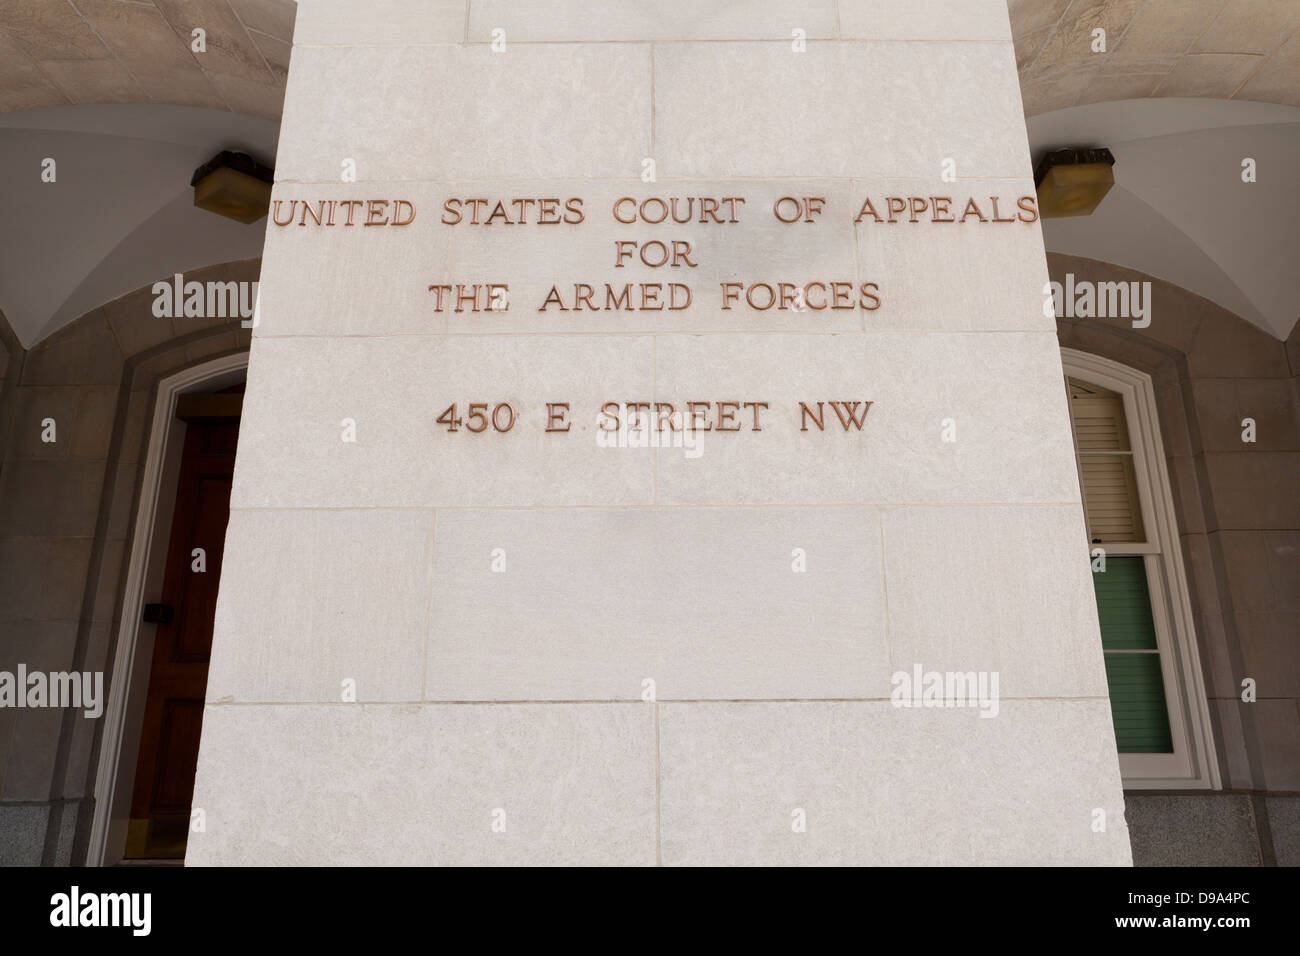 Corte de Apelaciones de Estados Unidos para las Fuerzas Armadas edificio - Washington, DC, EE.UU. Foto de stock